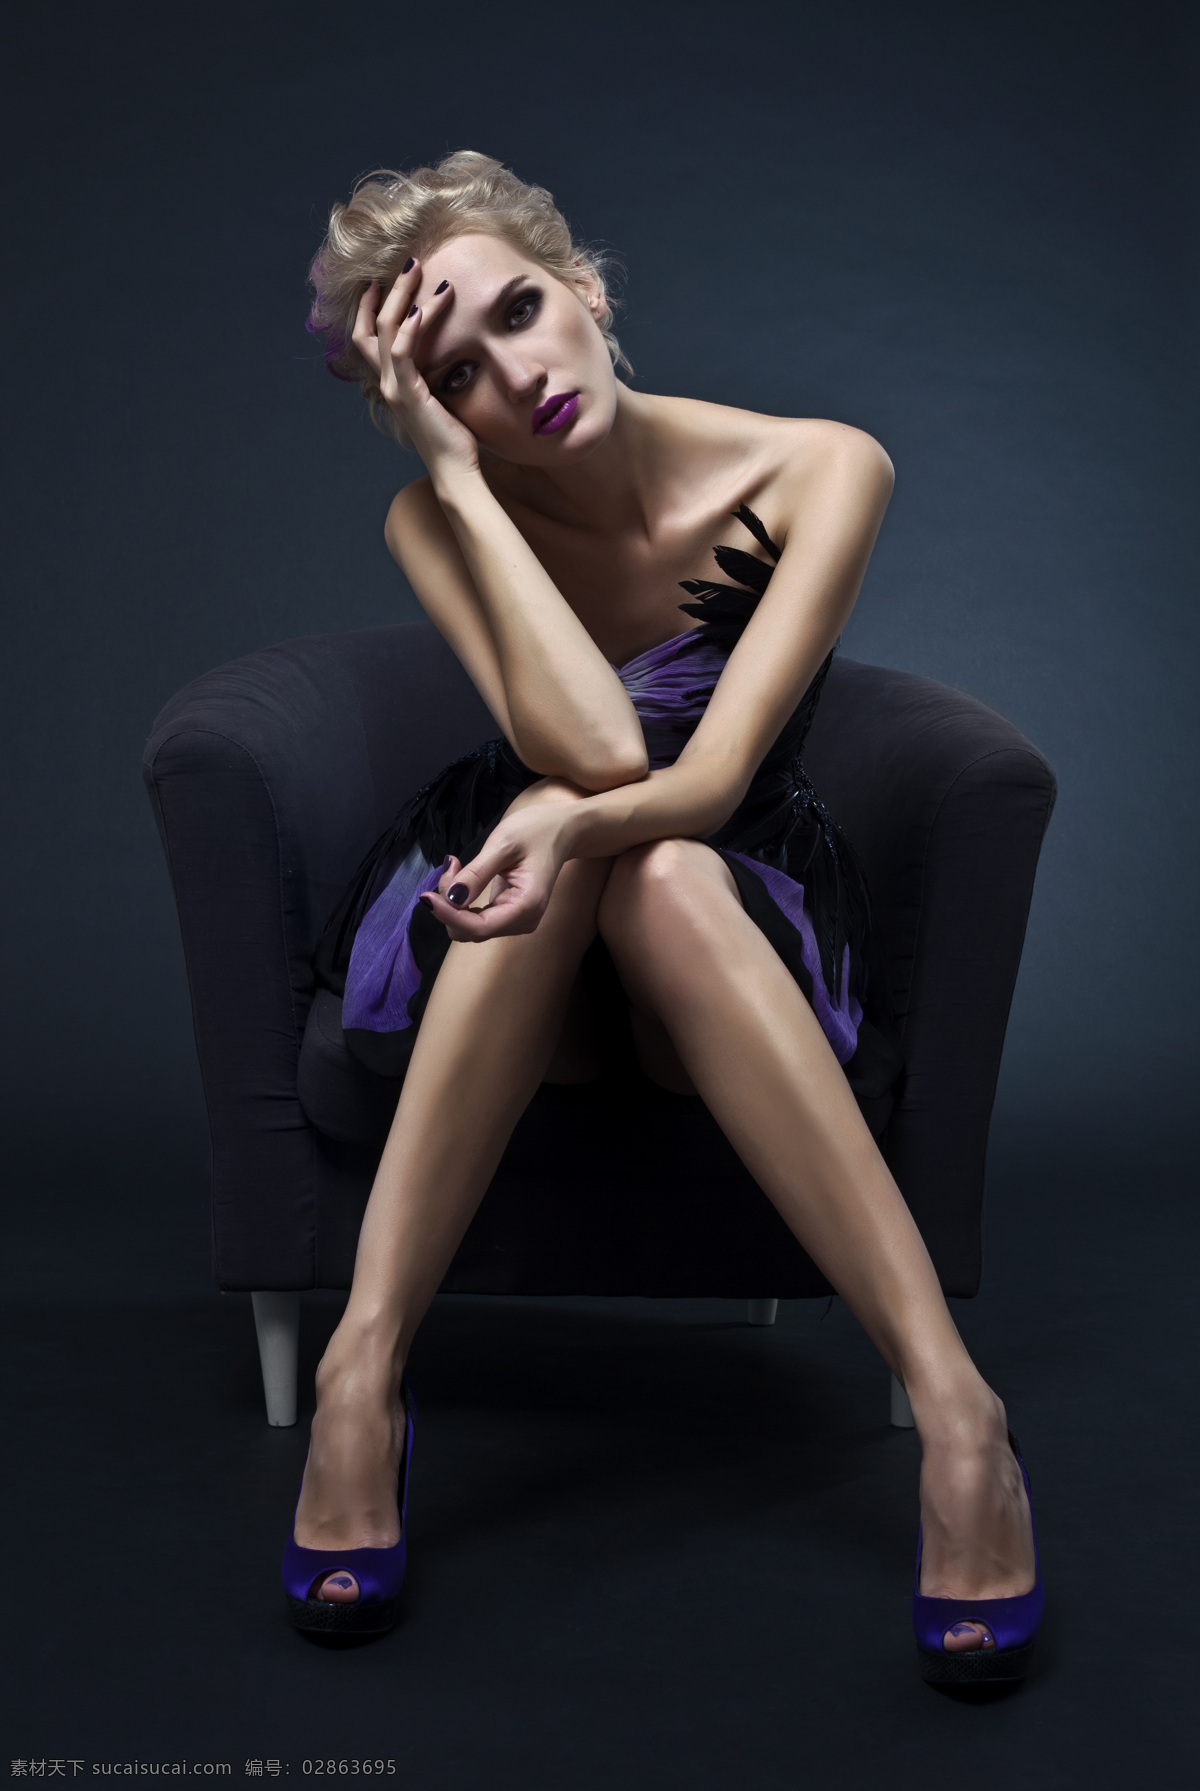 坐 时尚 美女图片 女性 女人 时尚美女 性感美女 美女写真 模特 紫色高跟鞋 沙发 人物图片